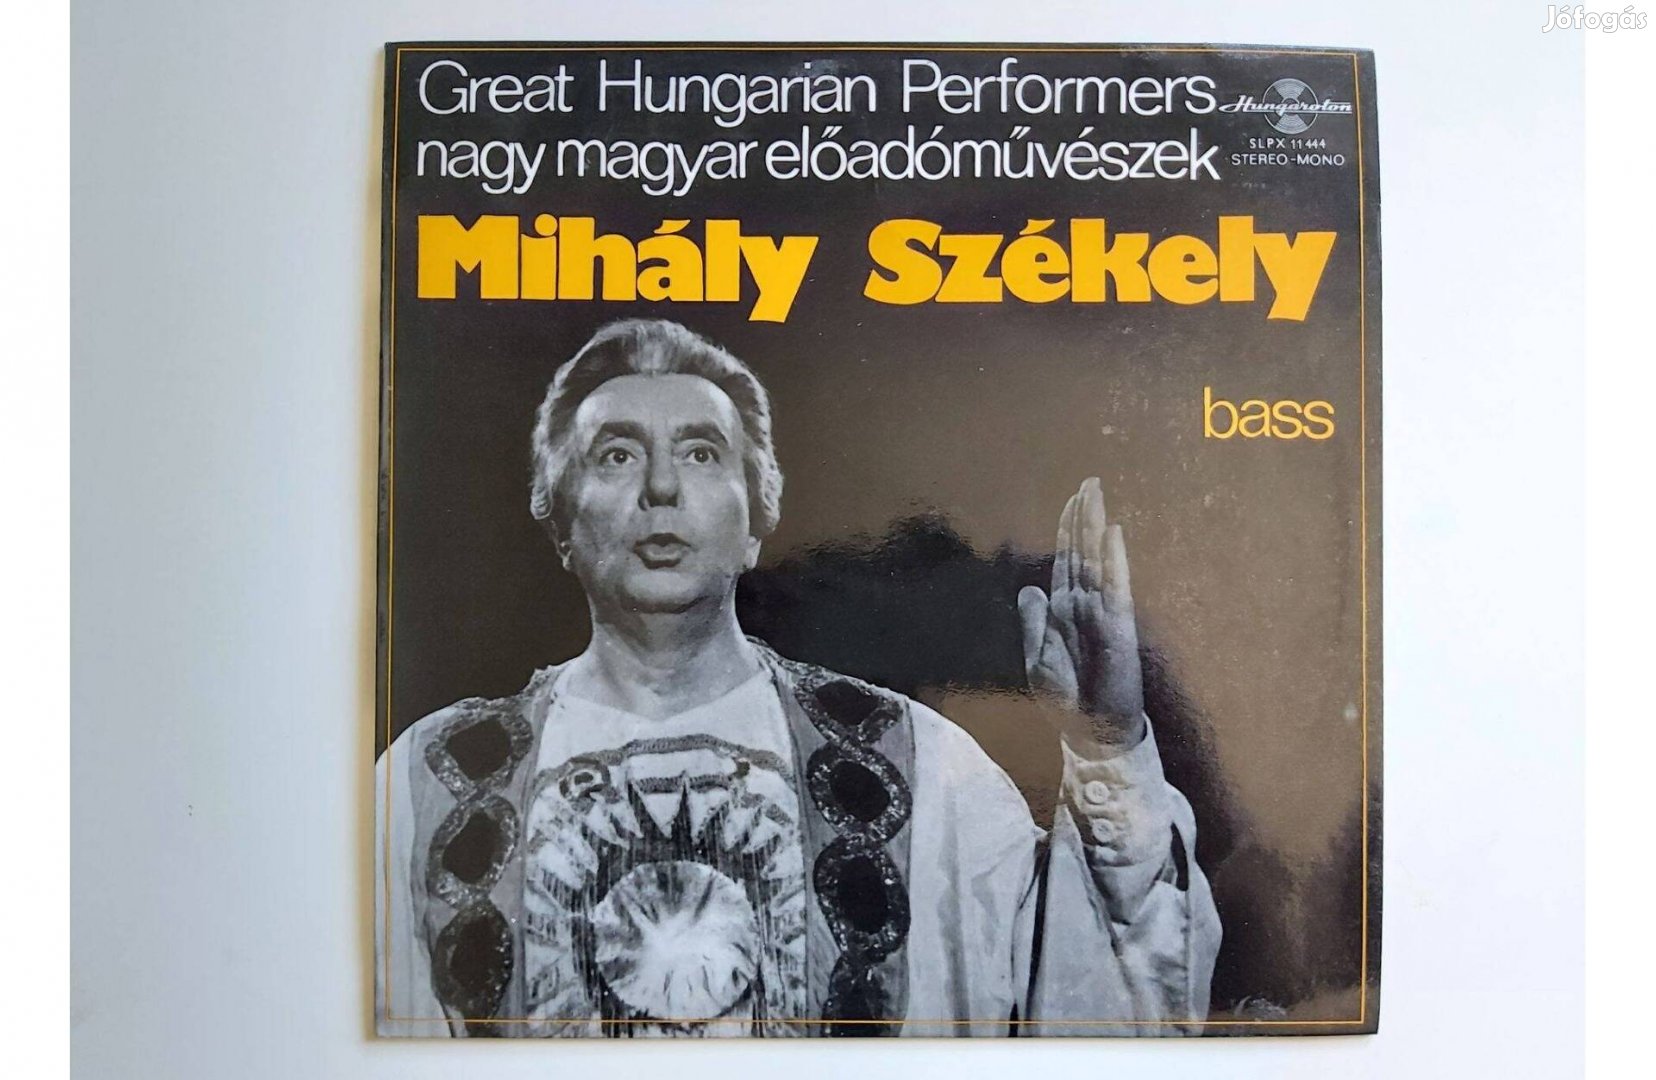 Nagy magyar előadóművészek - Székely Mihály - Bass (LP album)